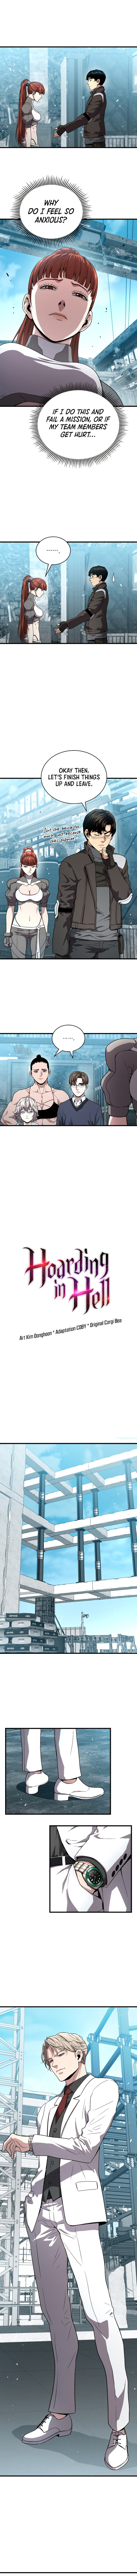 hoarding_in_hell_53_5